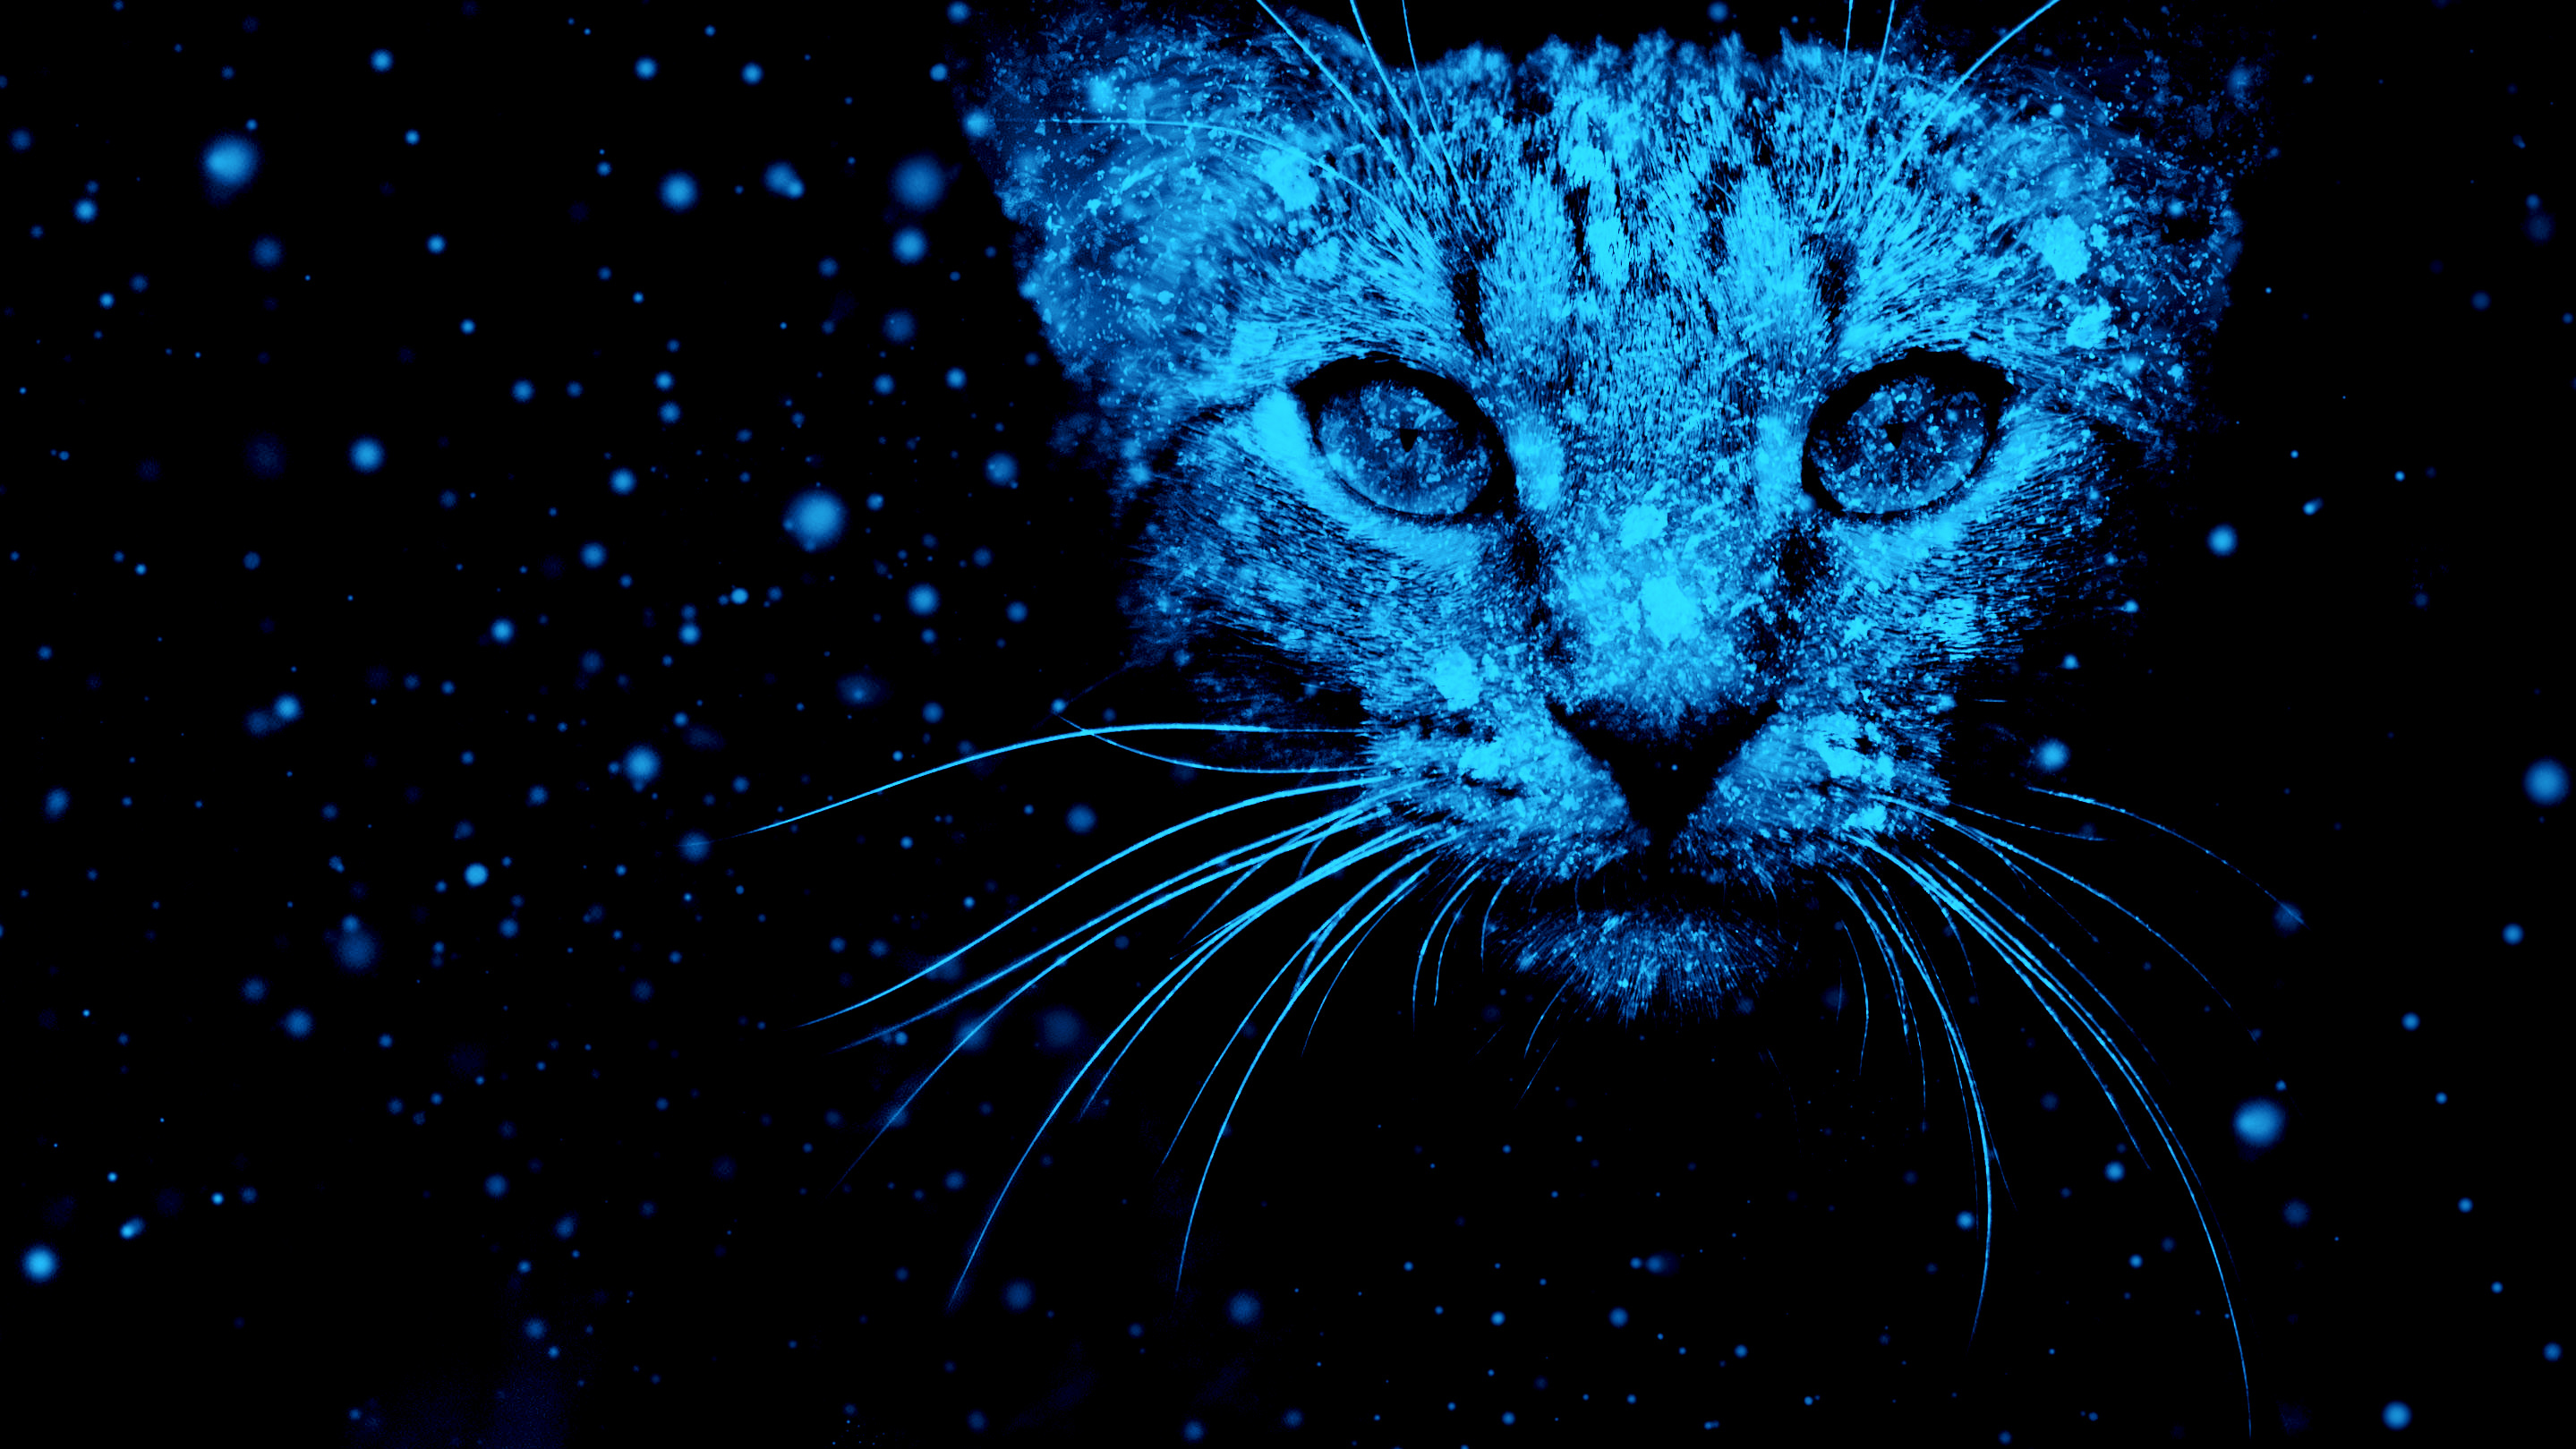 Artistic Blue Cat Pet 2878x1619